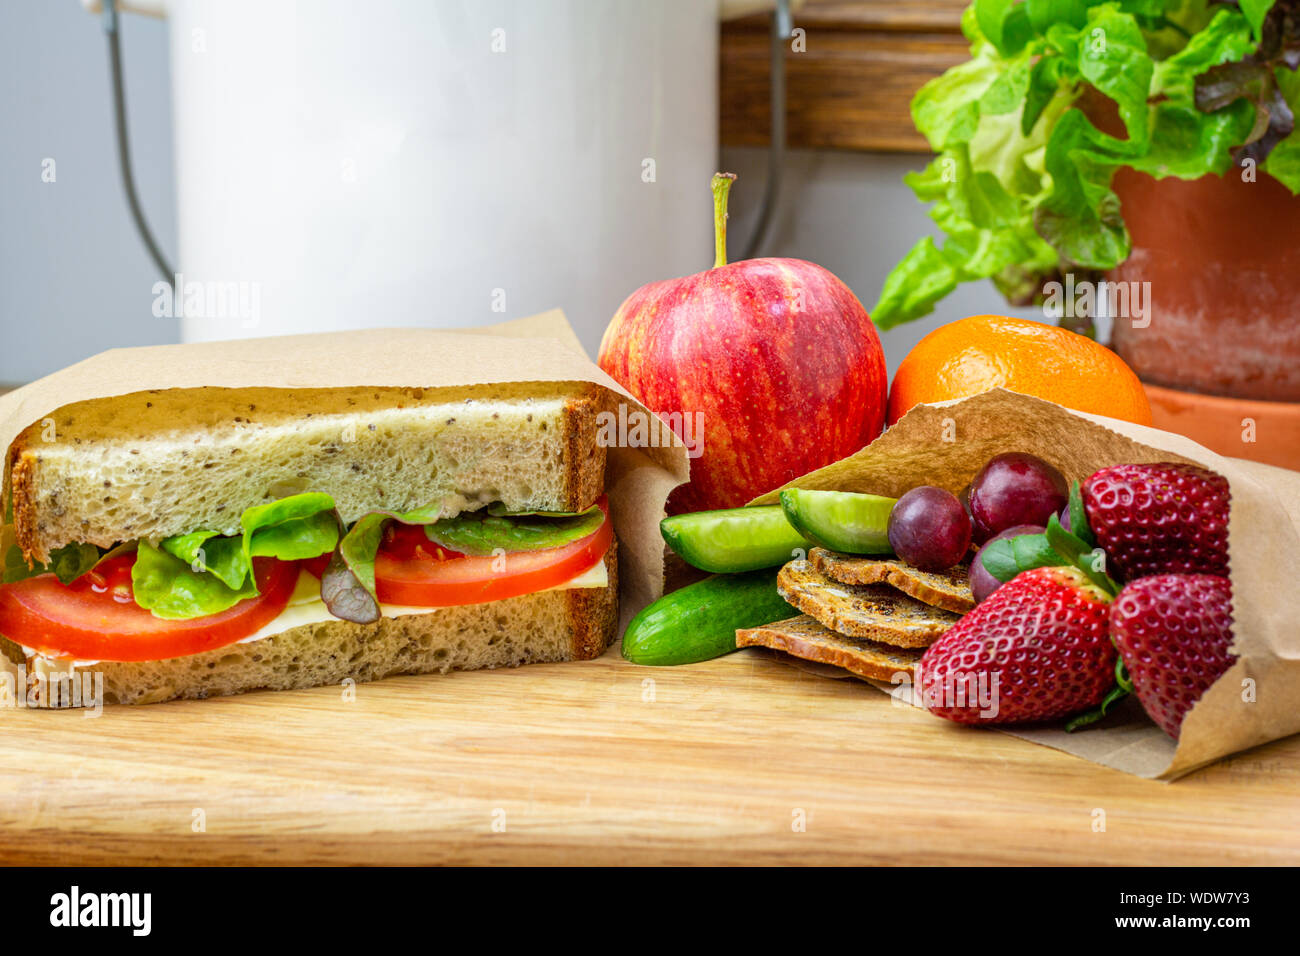 Gesundes Lunchpaket mit authentischen echte hausgemachte Sandwiches und frische Lebensmittel aus recyclingfähigem Papier sandwich Beutel verpackt Stockfoto